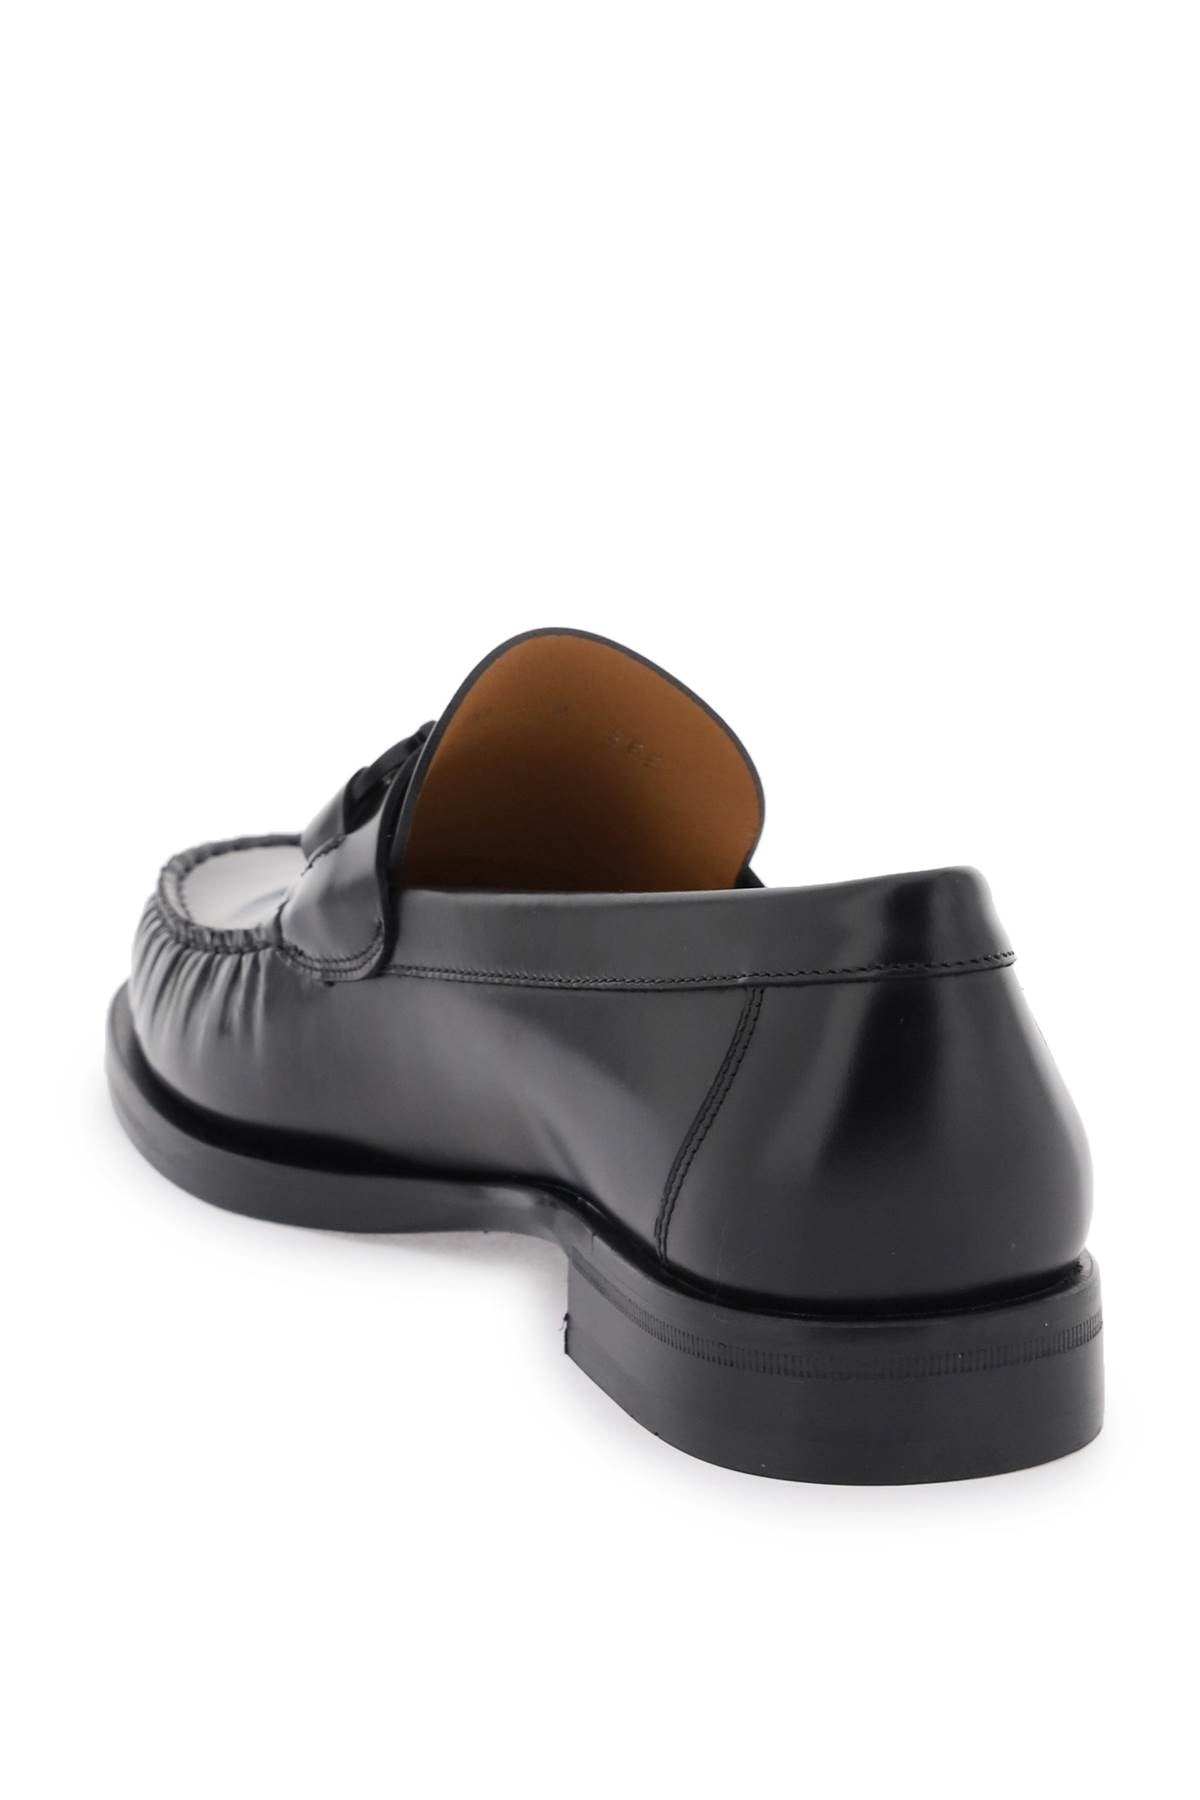 قصبة أحذية موكاسين Gancini الأيقونية السوداء للرجال من جلد الفرش | SS24